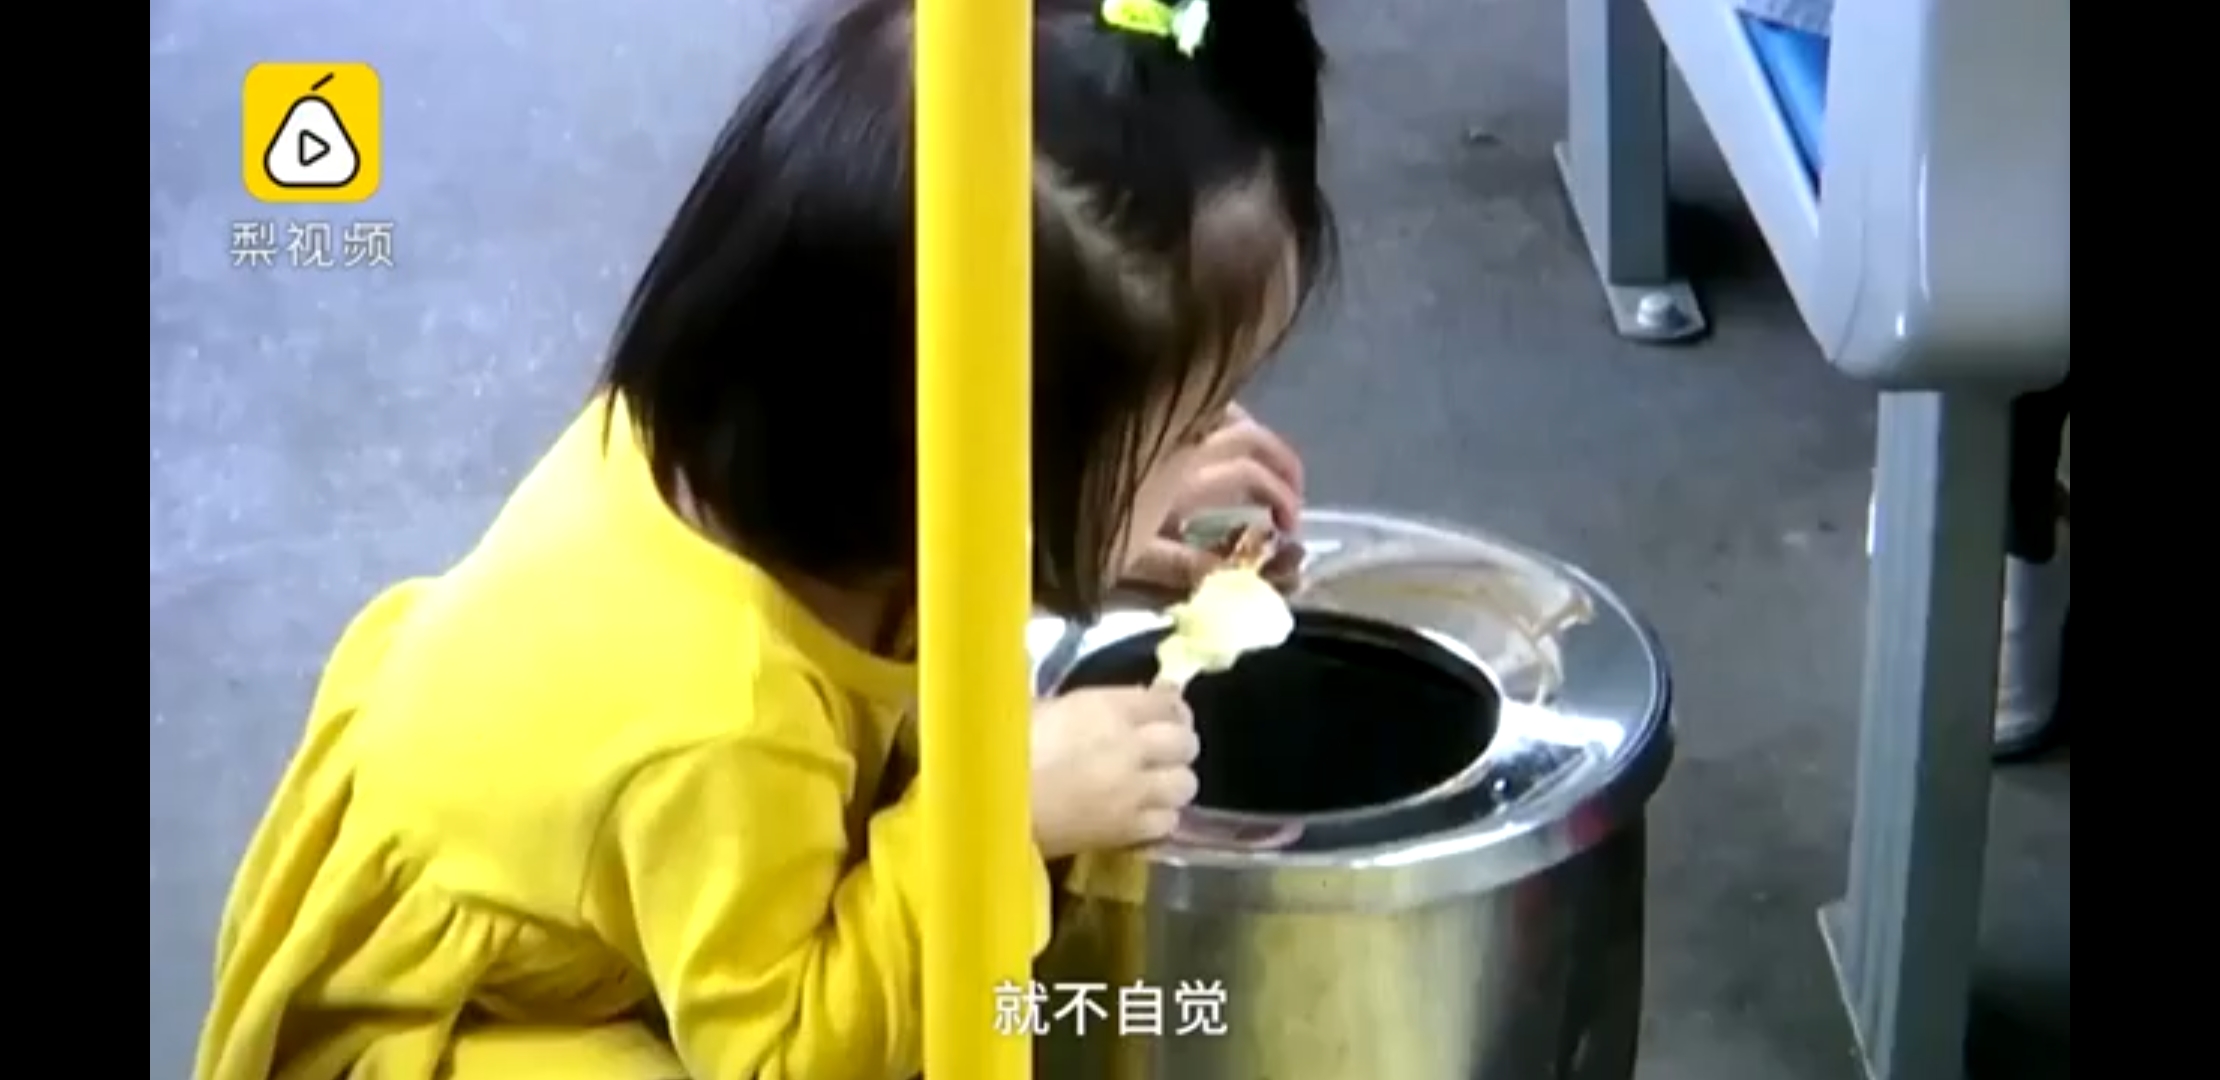 Video Balita Makan Es Krim sambil Jongkok Dekat Tempat Sampah Viral!